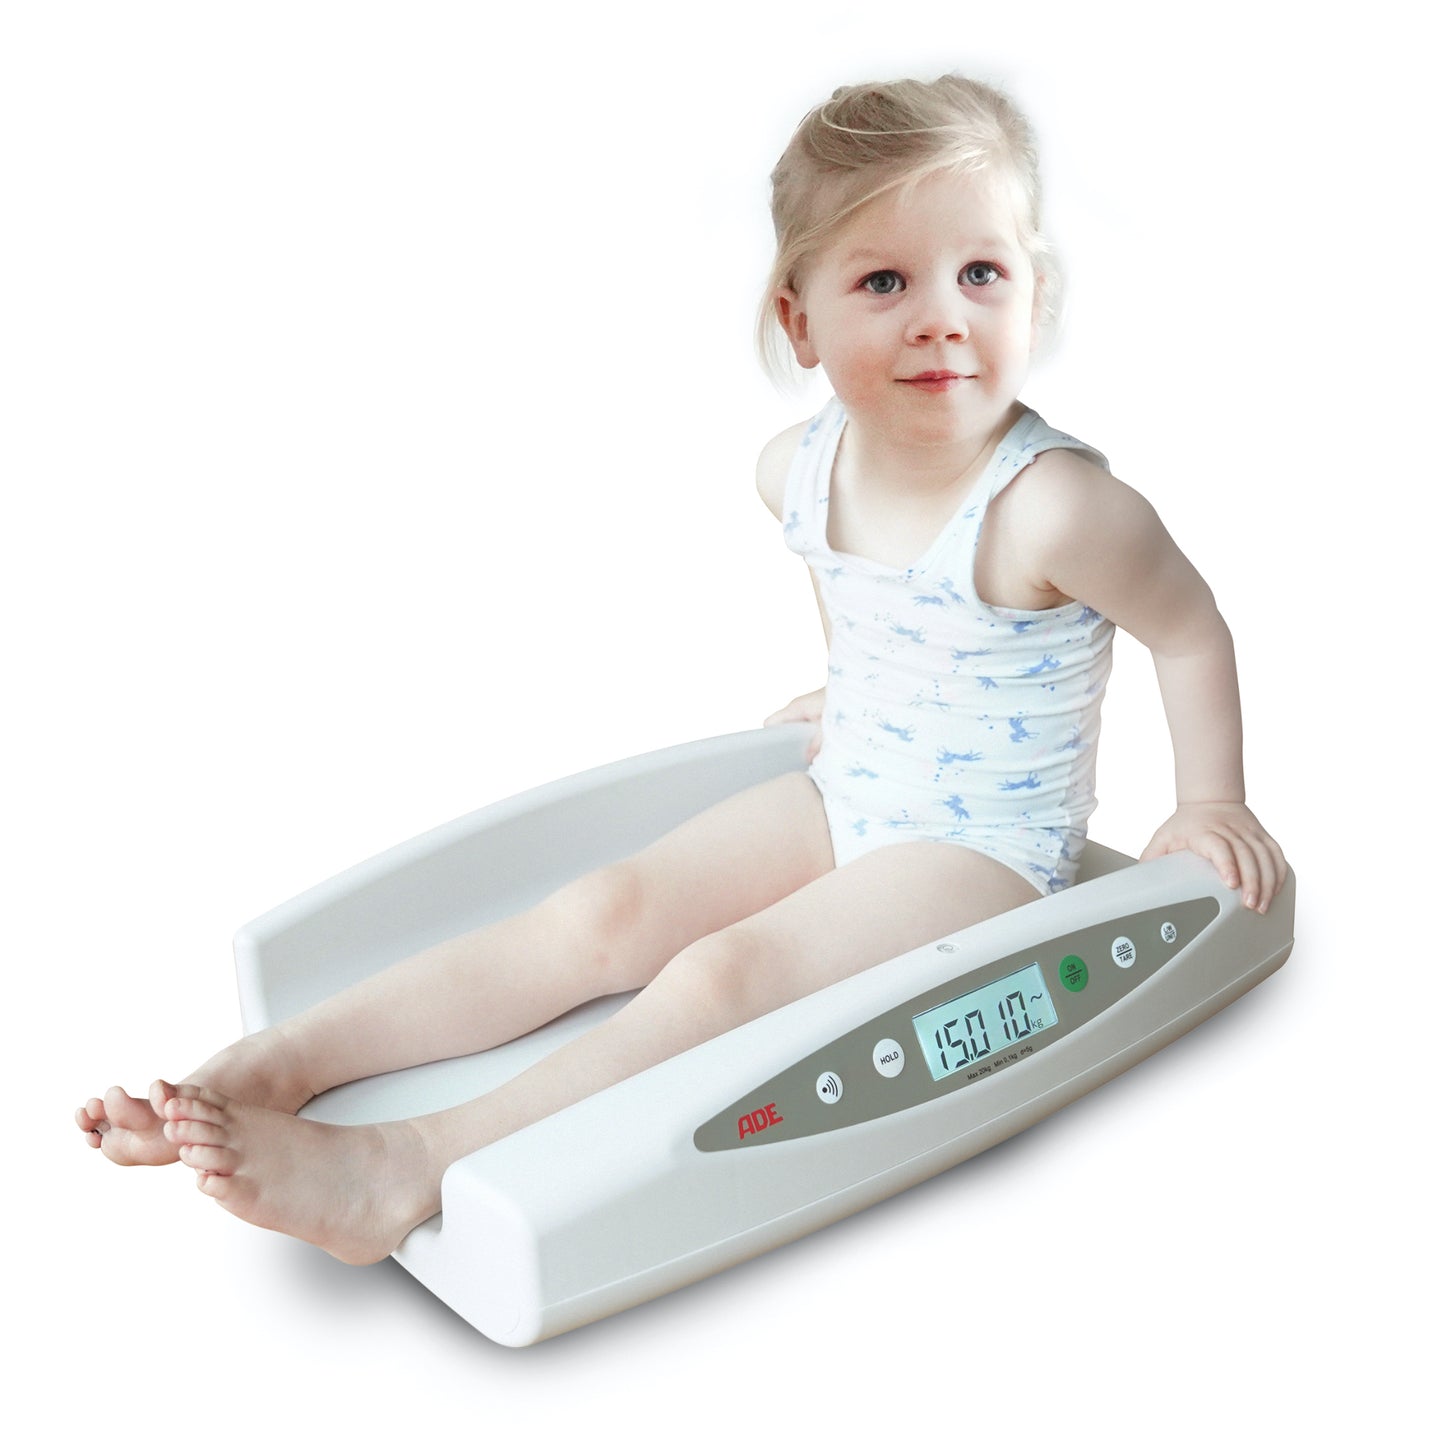 Professionelle Komfort-Babywaage | ADE M112600 | Höchstlast: 20 kg - mit Kleinkind